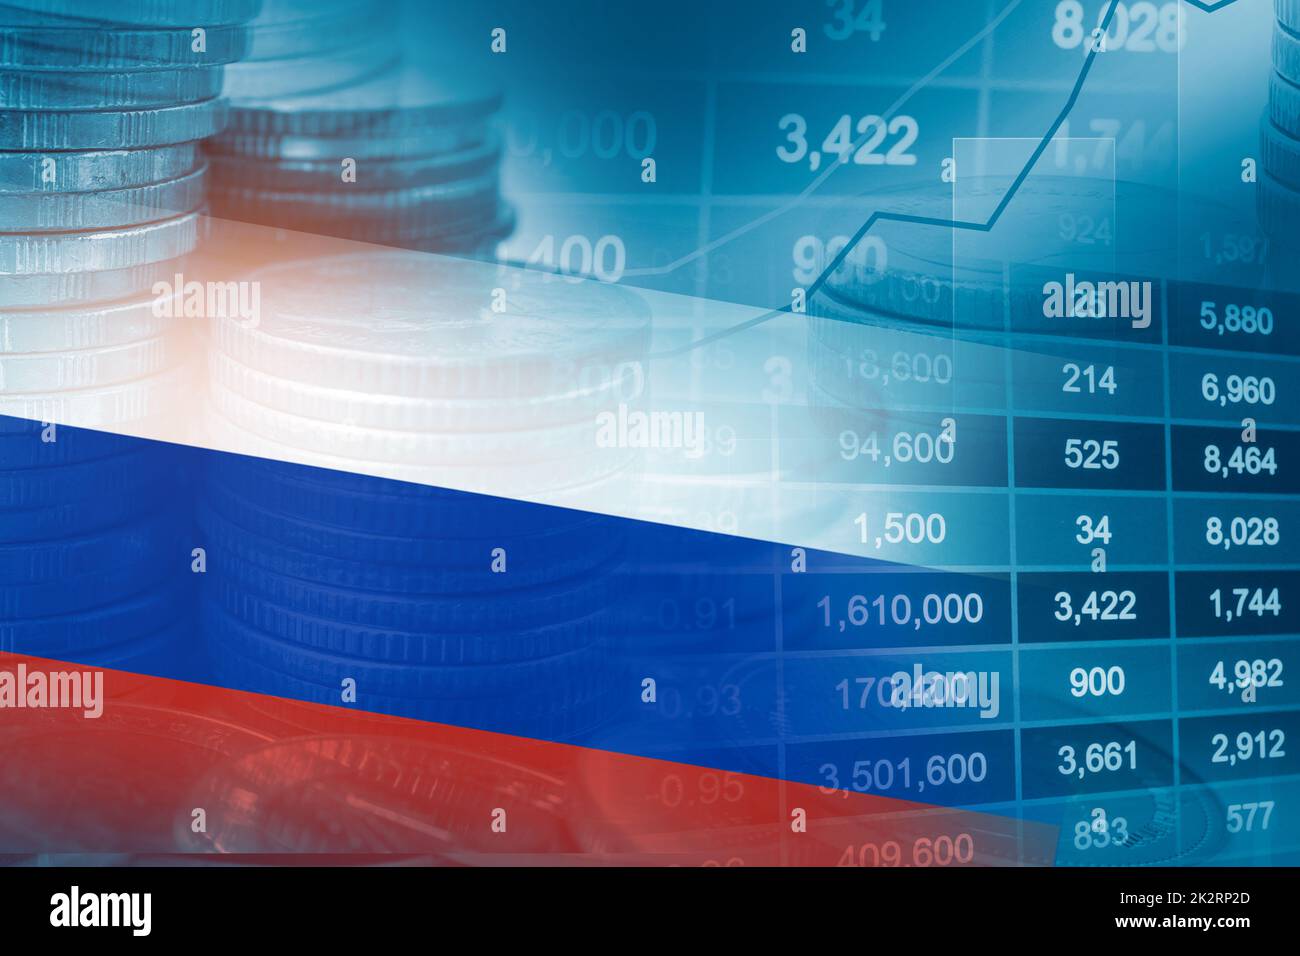 Bourse investissement trading financier, coin et Slovaquie drapeau ou Forex pour analyser le financement des bénéfices tendances d'affaires fond de données. Banque D'Images